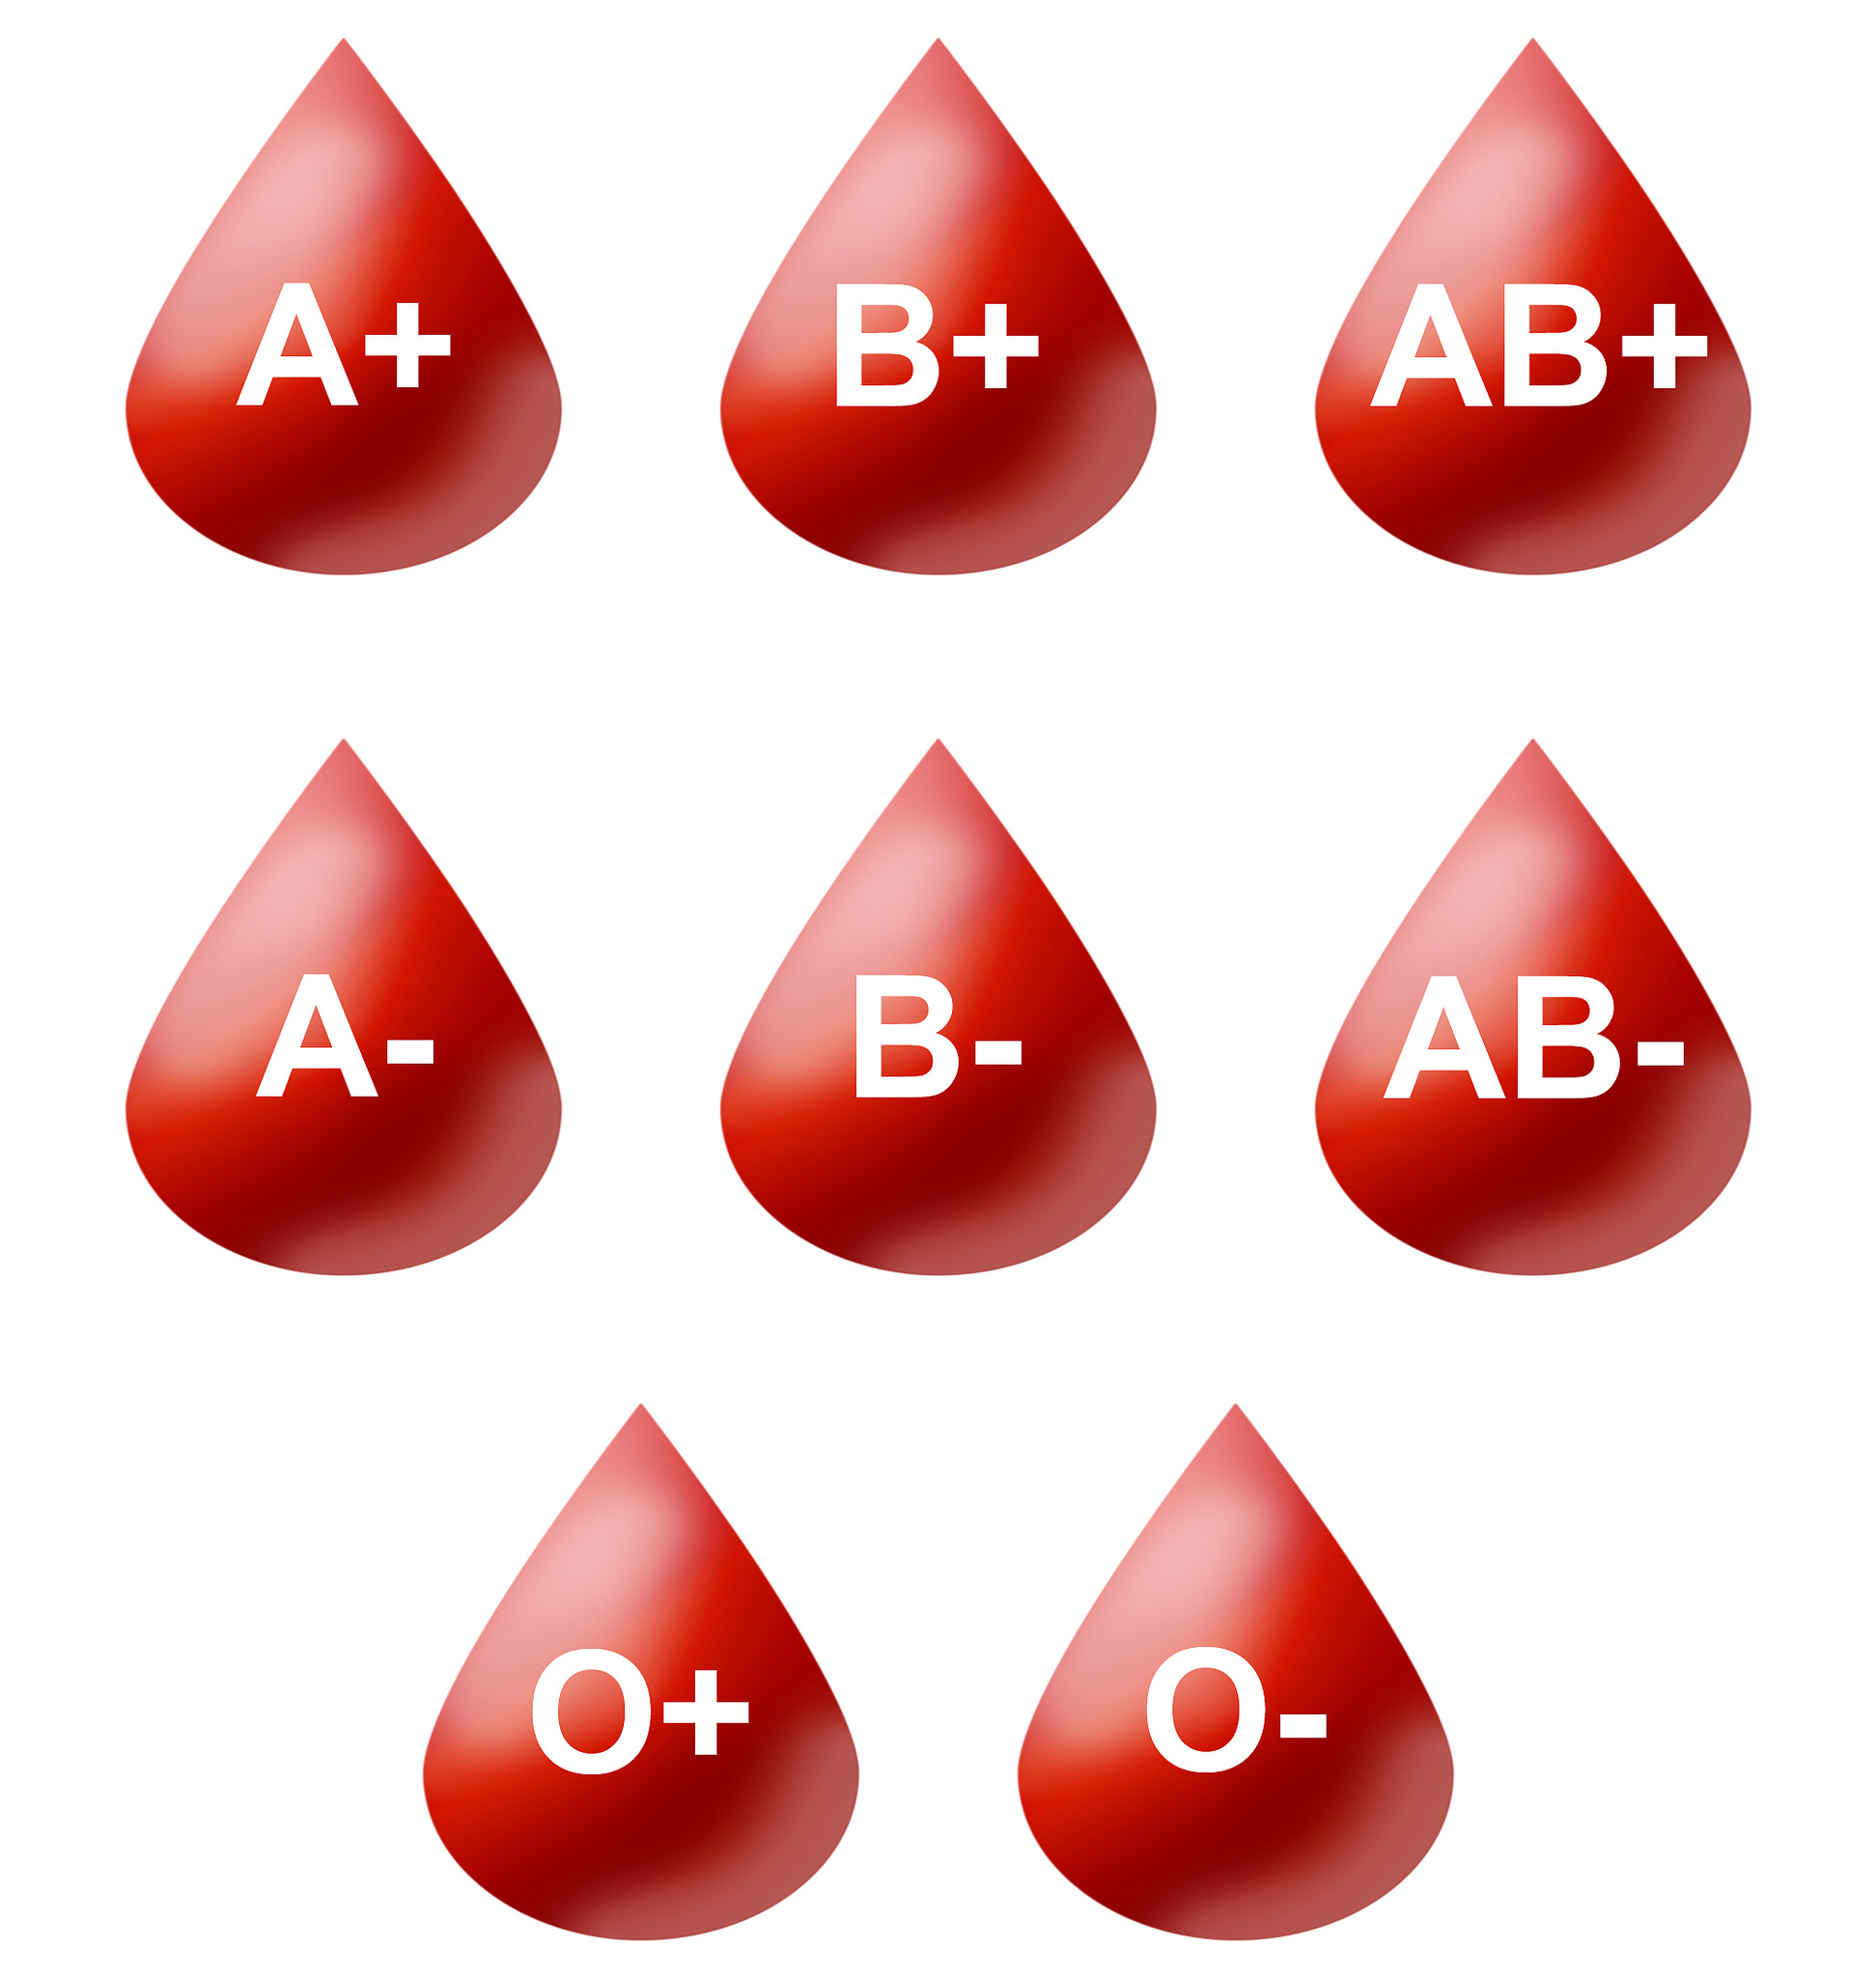 کدام گروه خونی عملکرد جنسی بهتری دارد؟